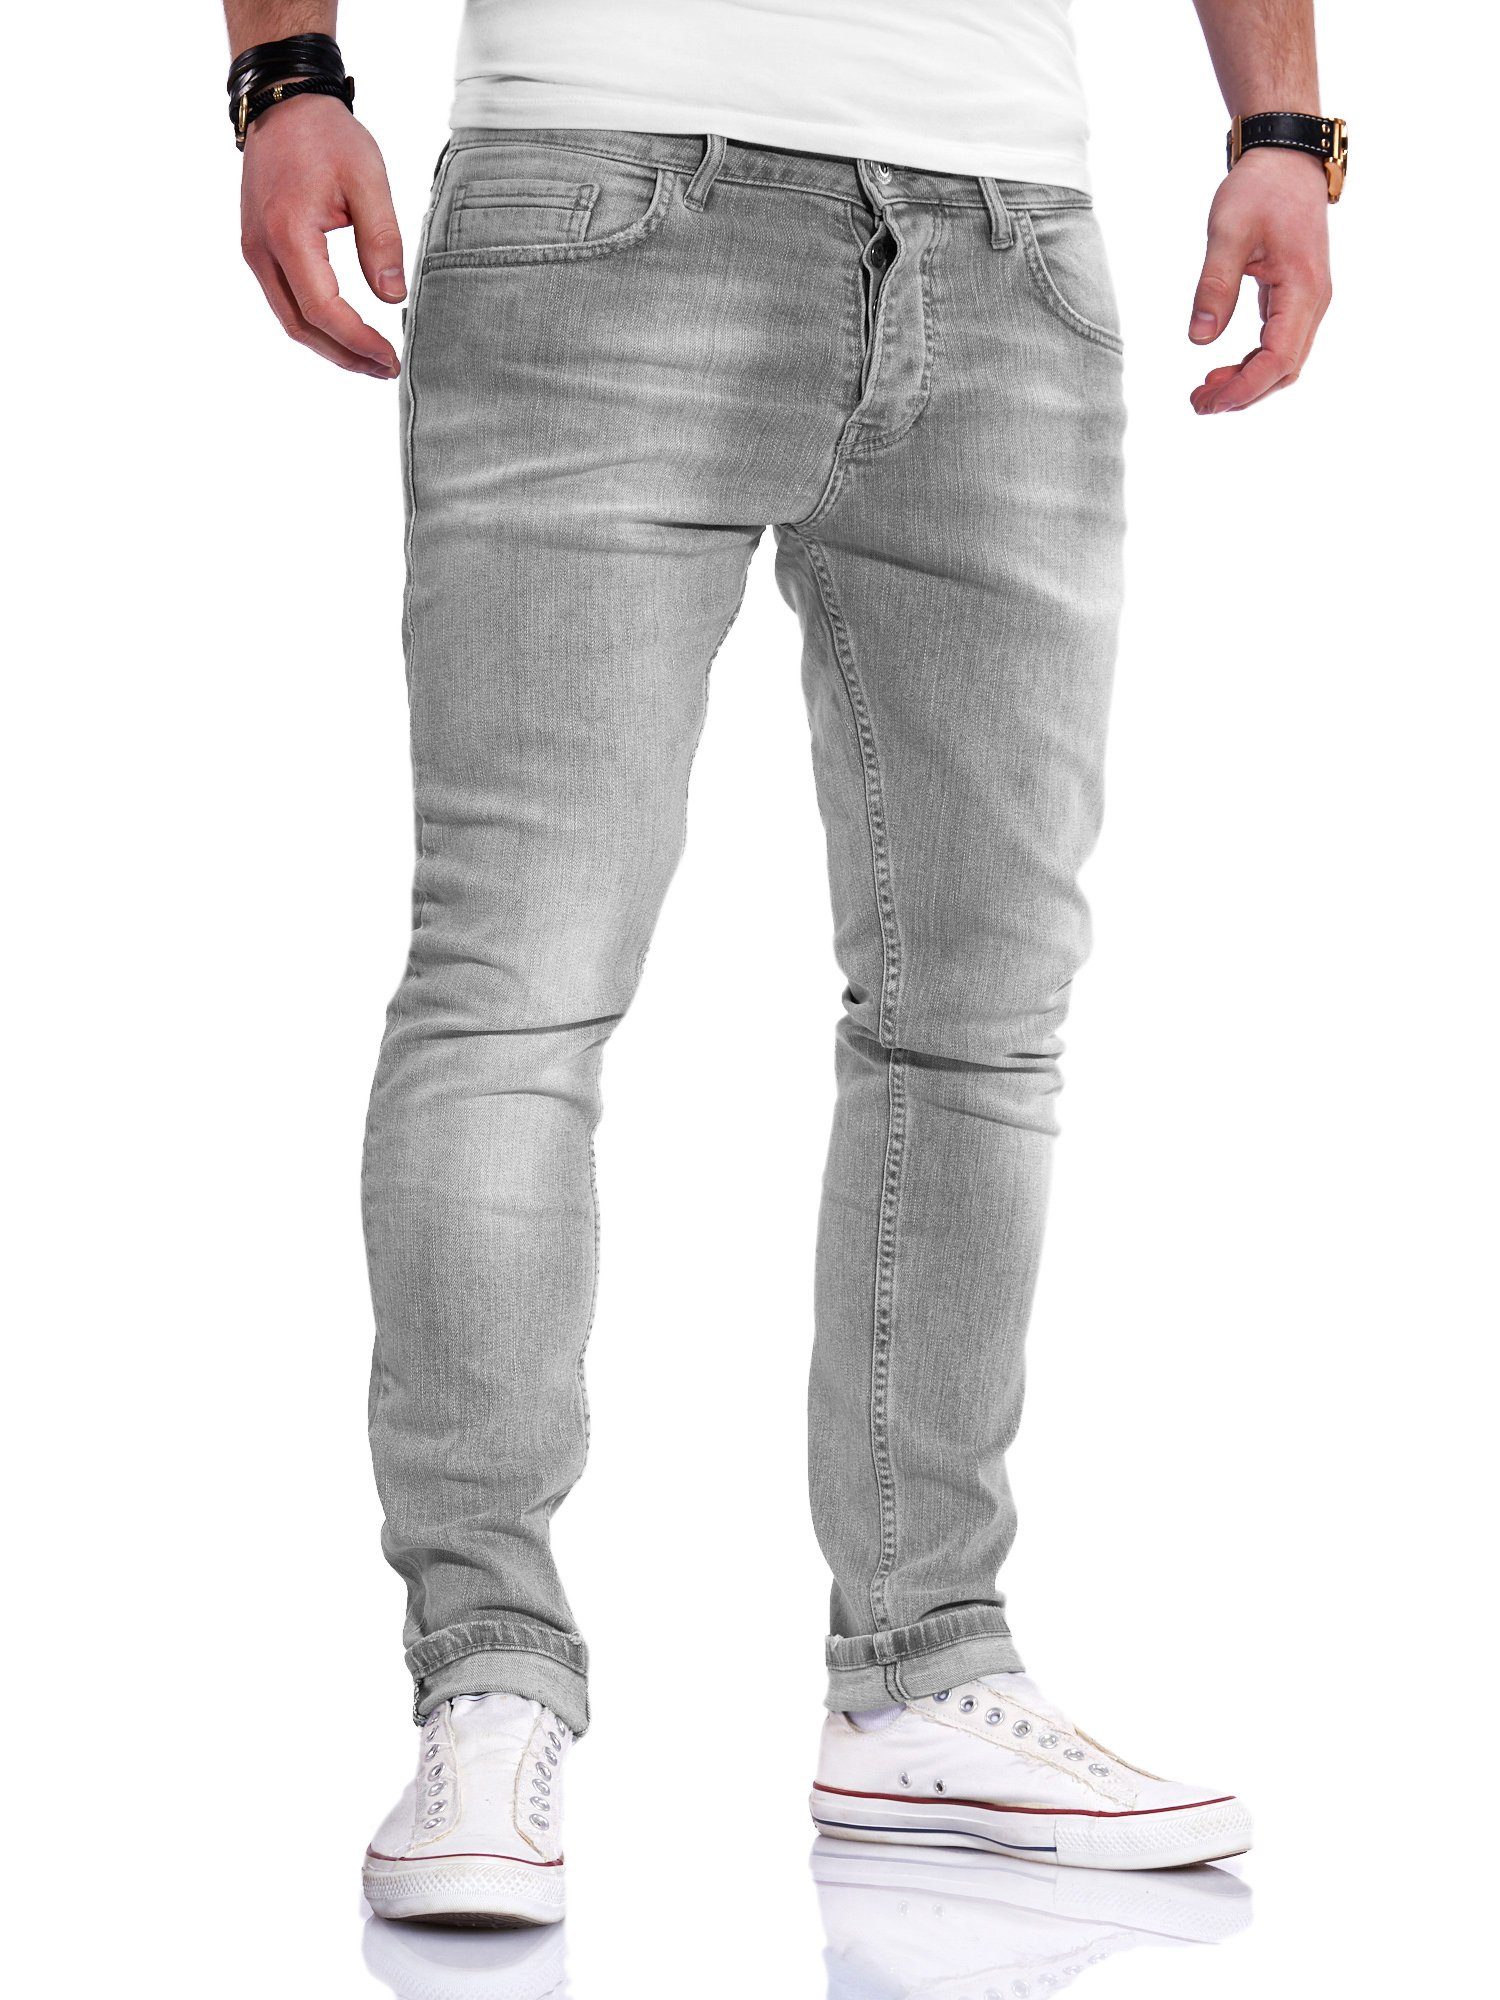 Herren Jeans in grau online kaufen | OTTO